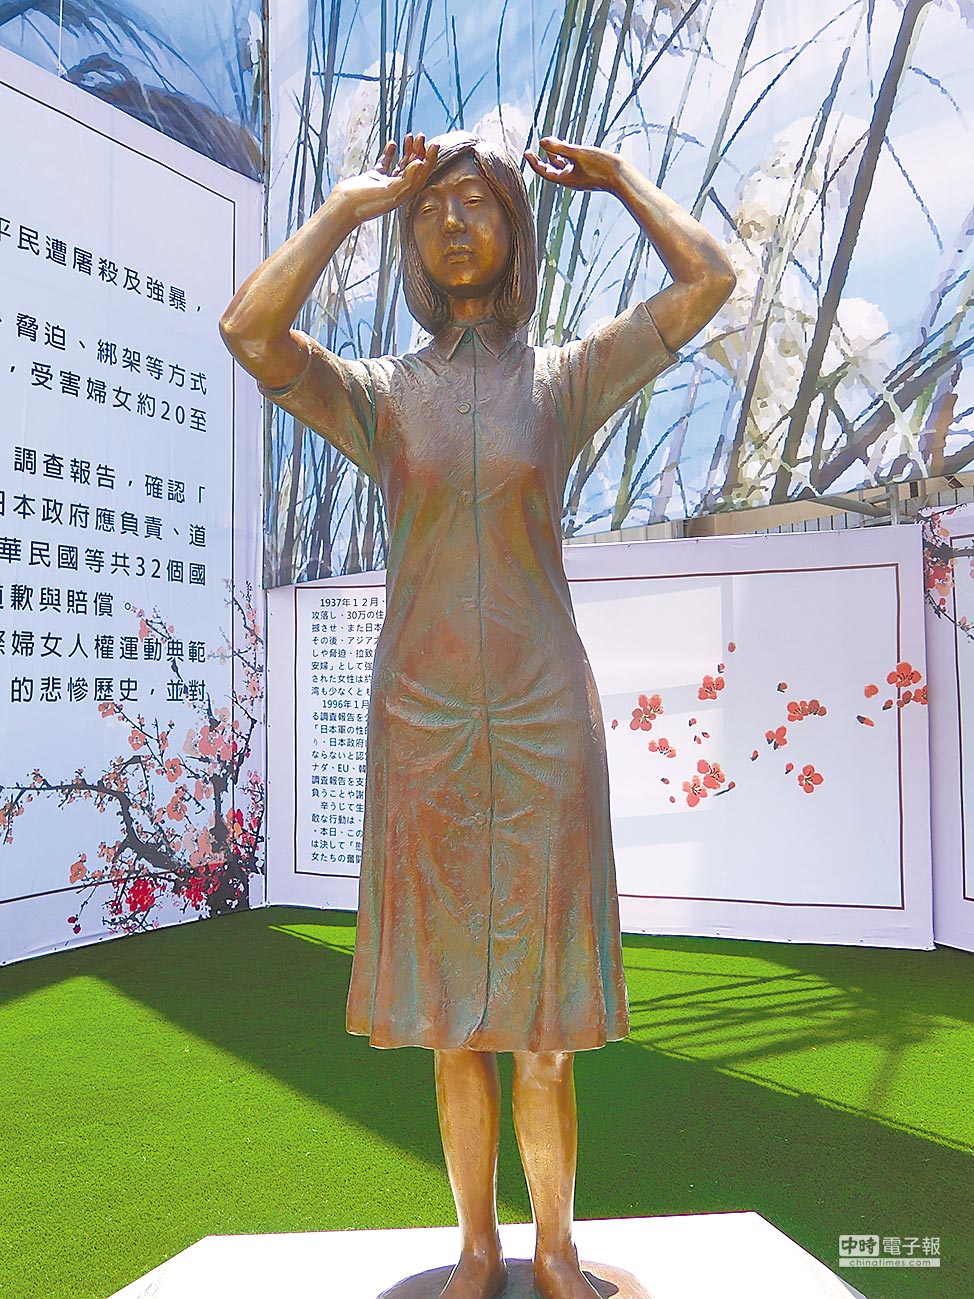 台湾于2018年在台南设立首座慰安妇铜像。中时